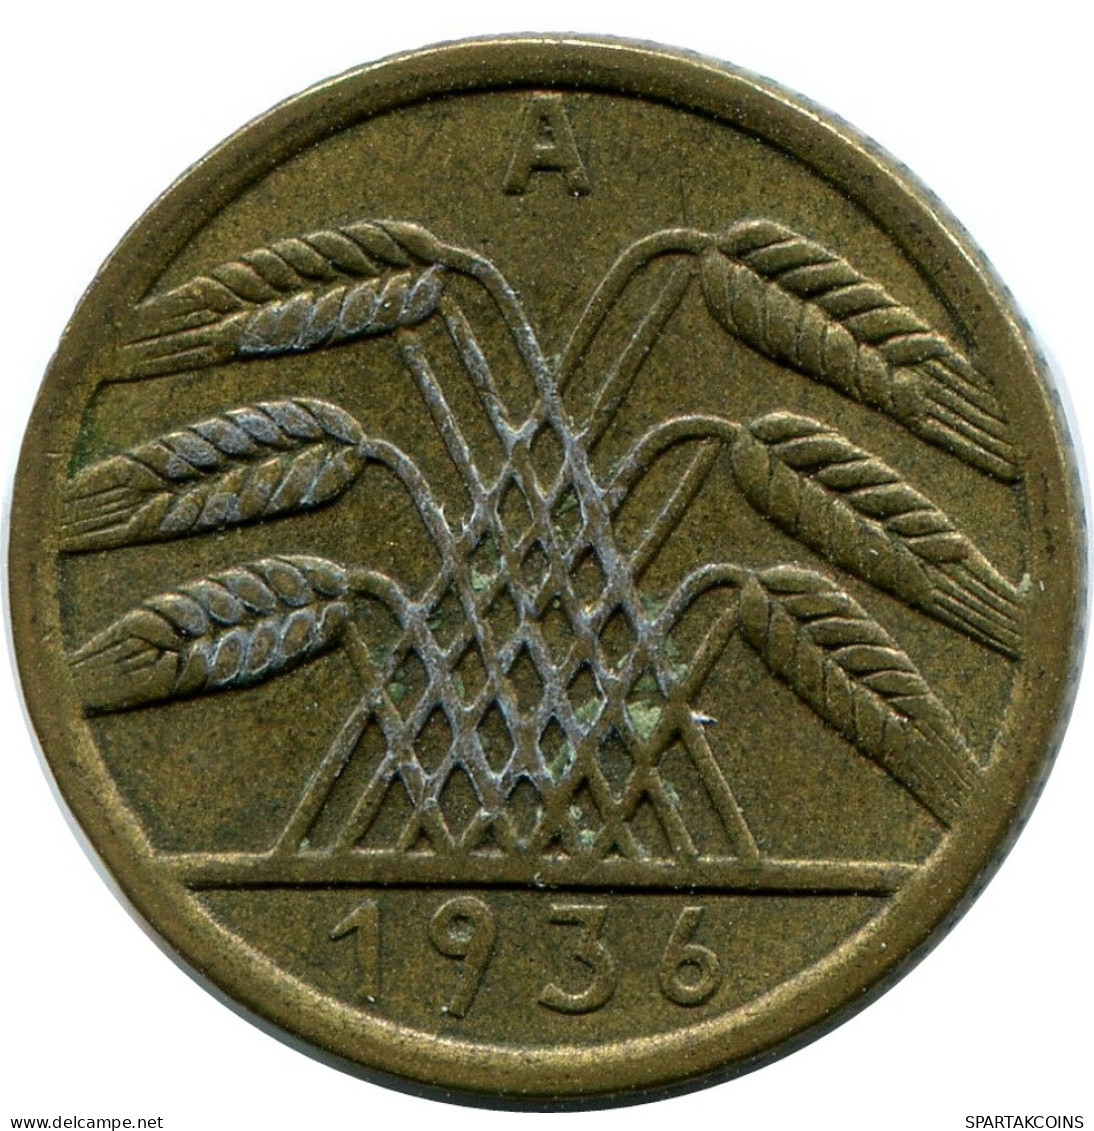 5 REICHSPFENNIG 1936 A GERMANY Coin #DB881.U - 5 Rentenpfennig & 5 Reichspfennig